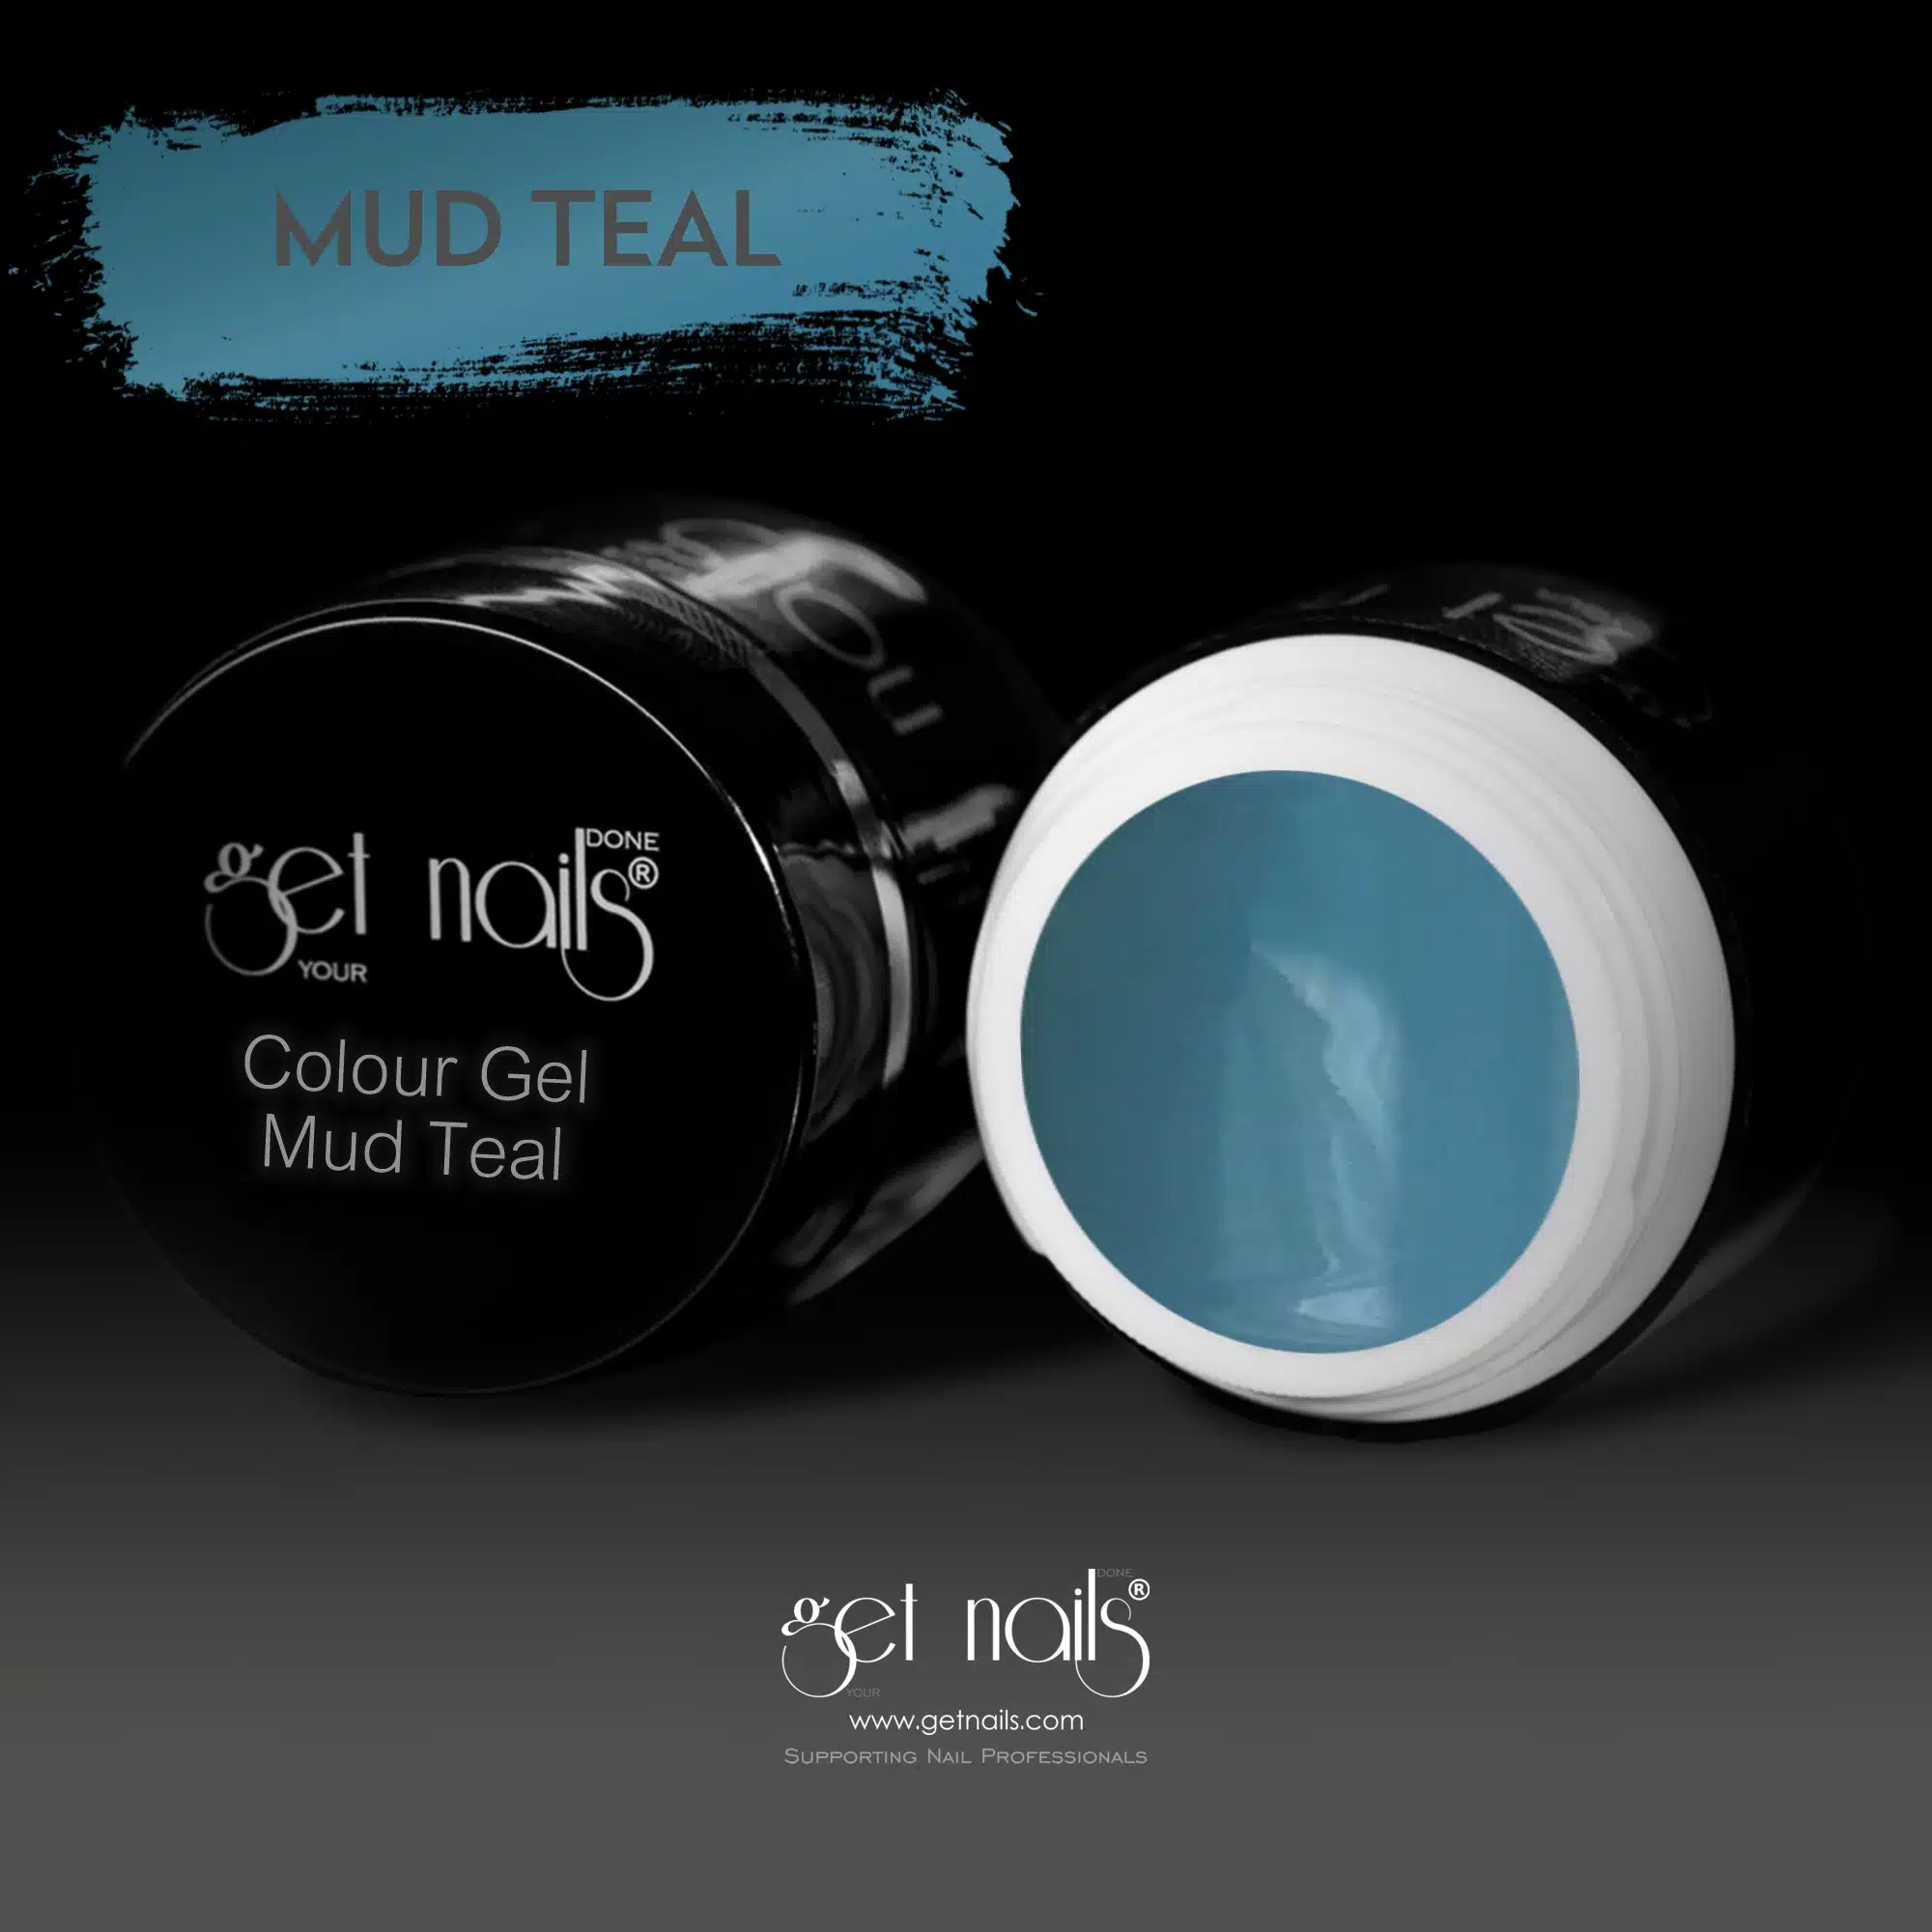 Get Nails Austria - Цветной гель Mud Teal 5g